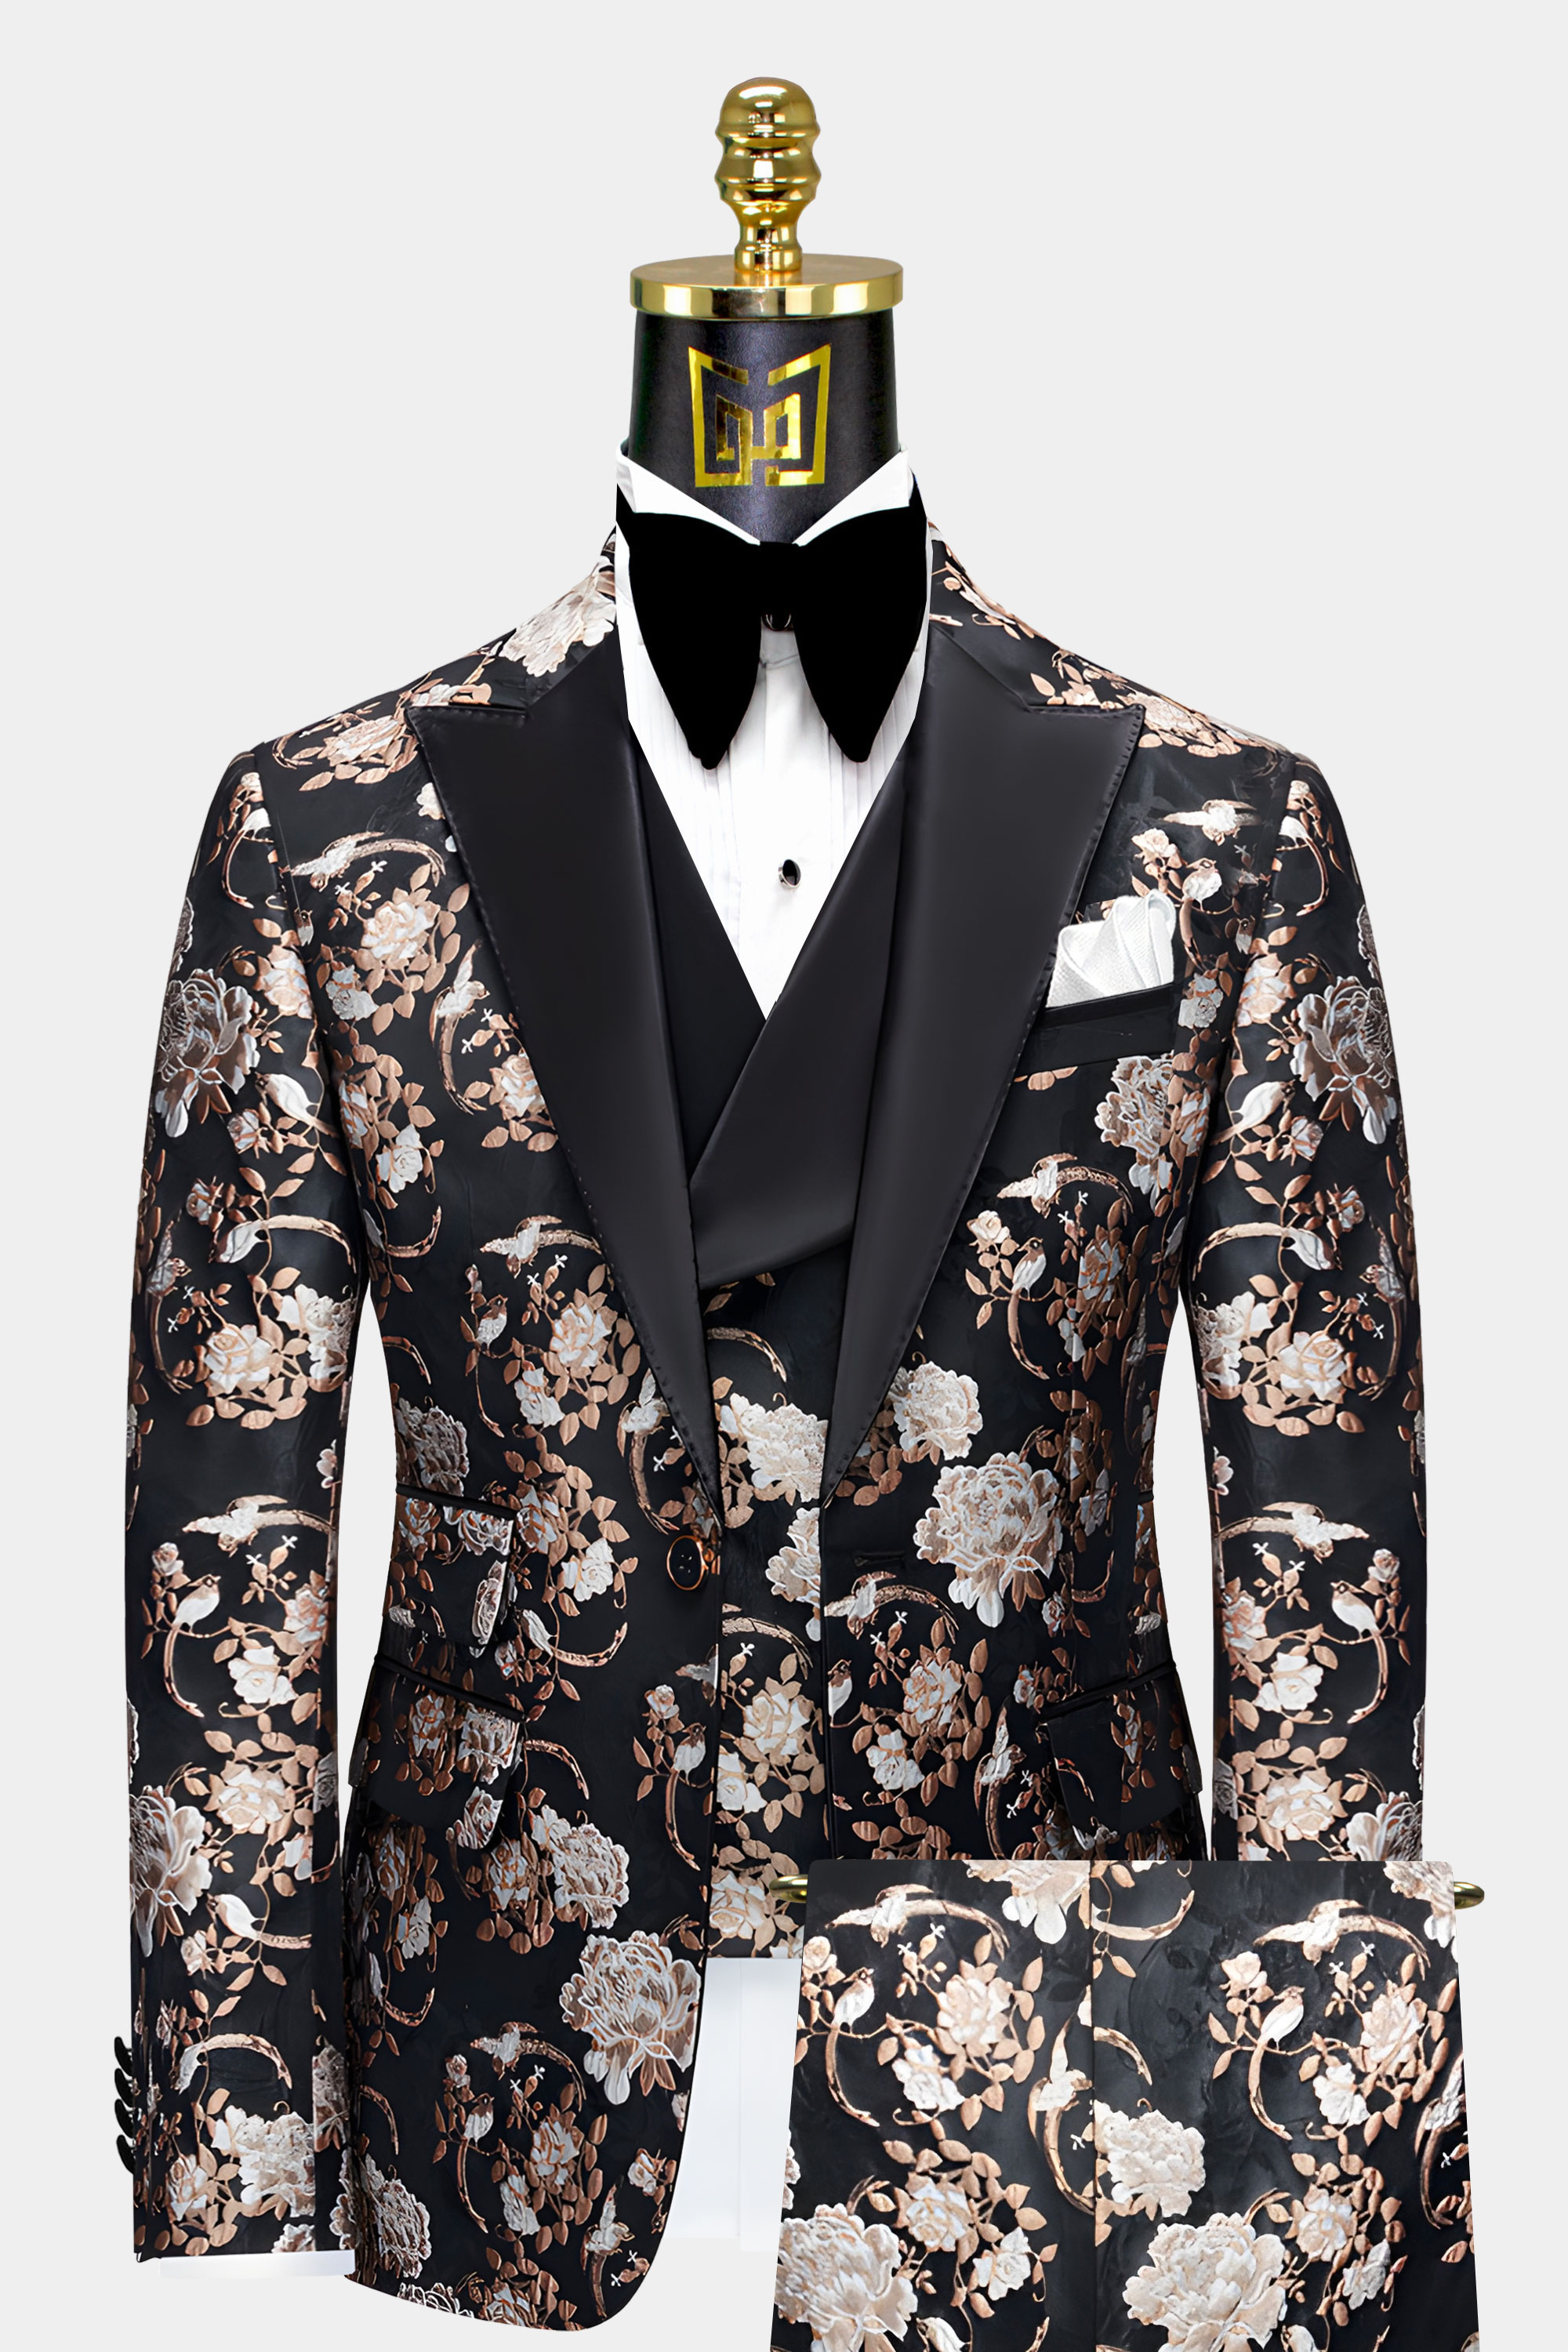 Black-and-Rose-Tuxedo-Groom-Wedding-Suit-from-Gentlemansguru.com